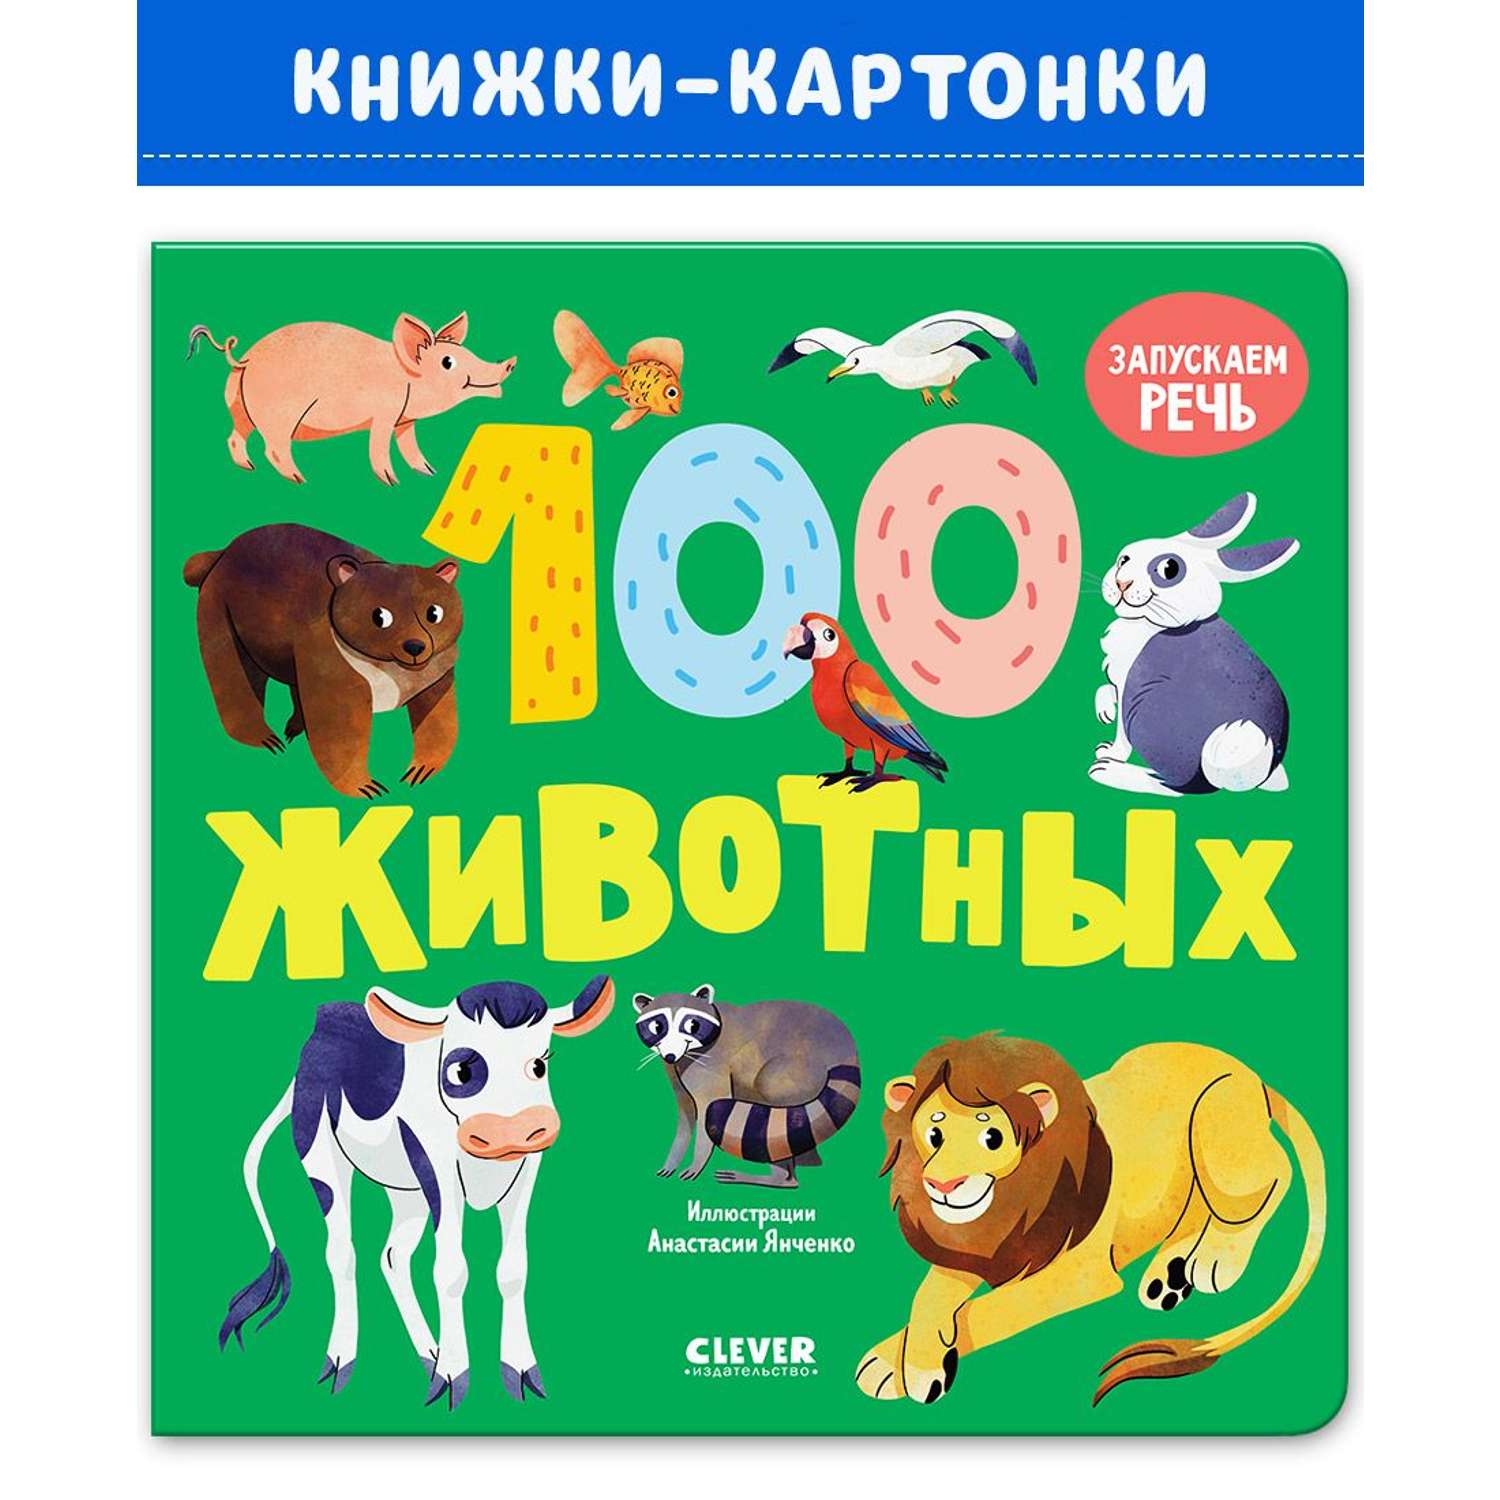 Книга Clever Издательство Книжки-картонки. 100 животных - фото 1